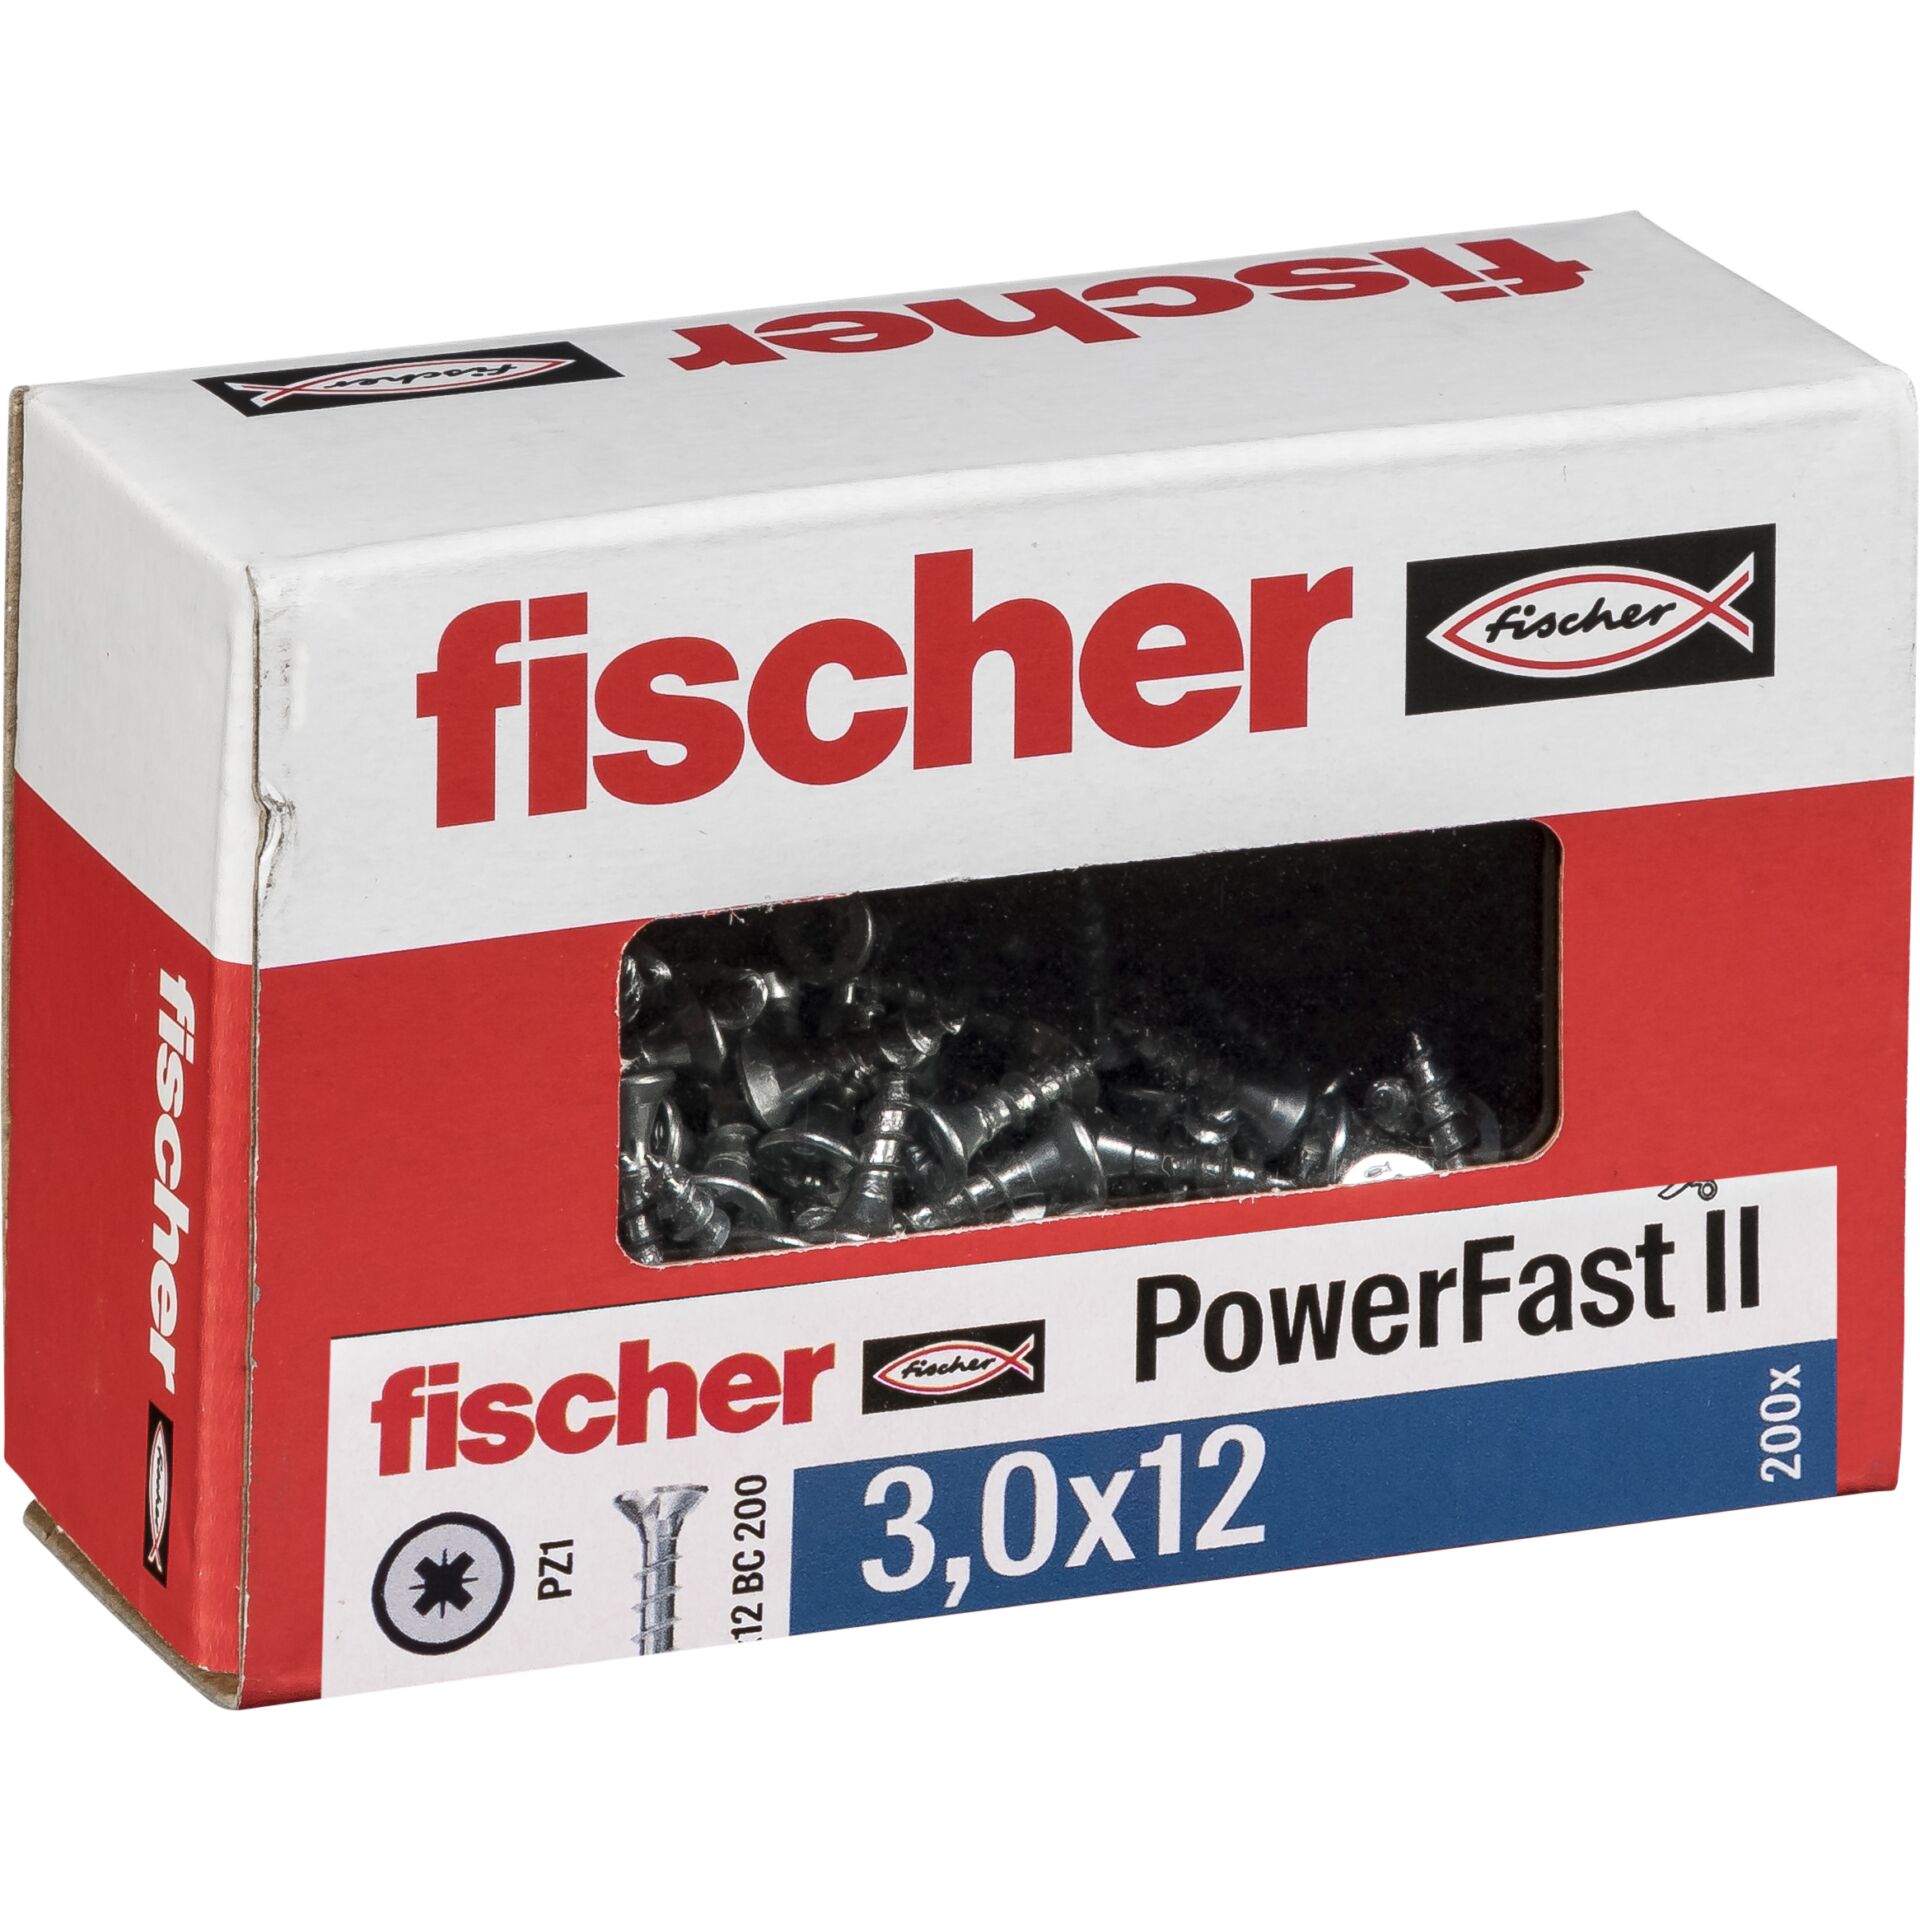 Fischer PowerFast II 3,0x12 SK PZ VG blvz 200